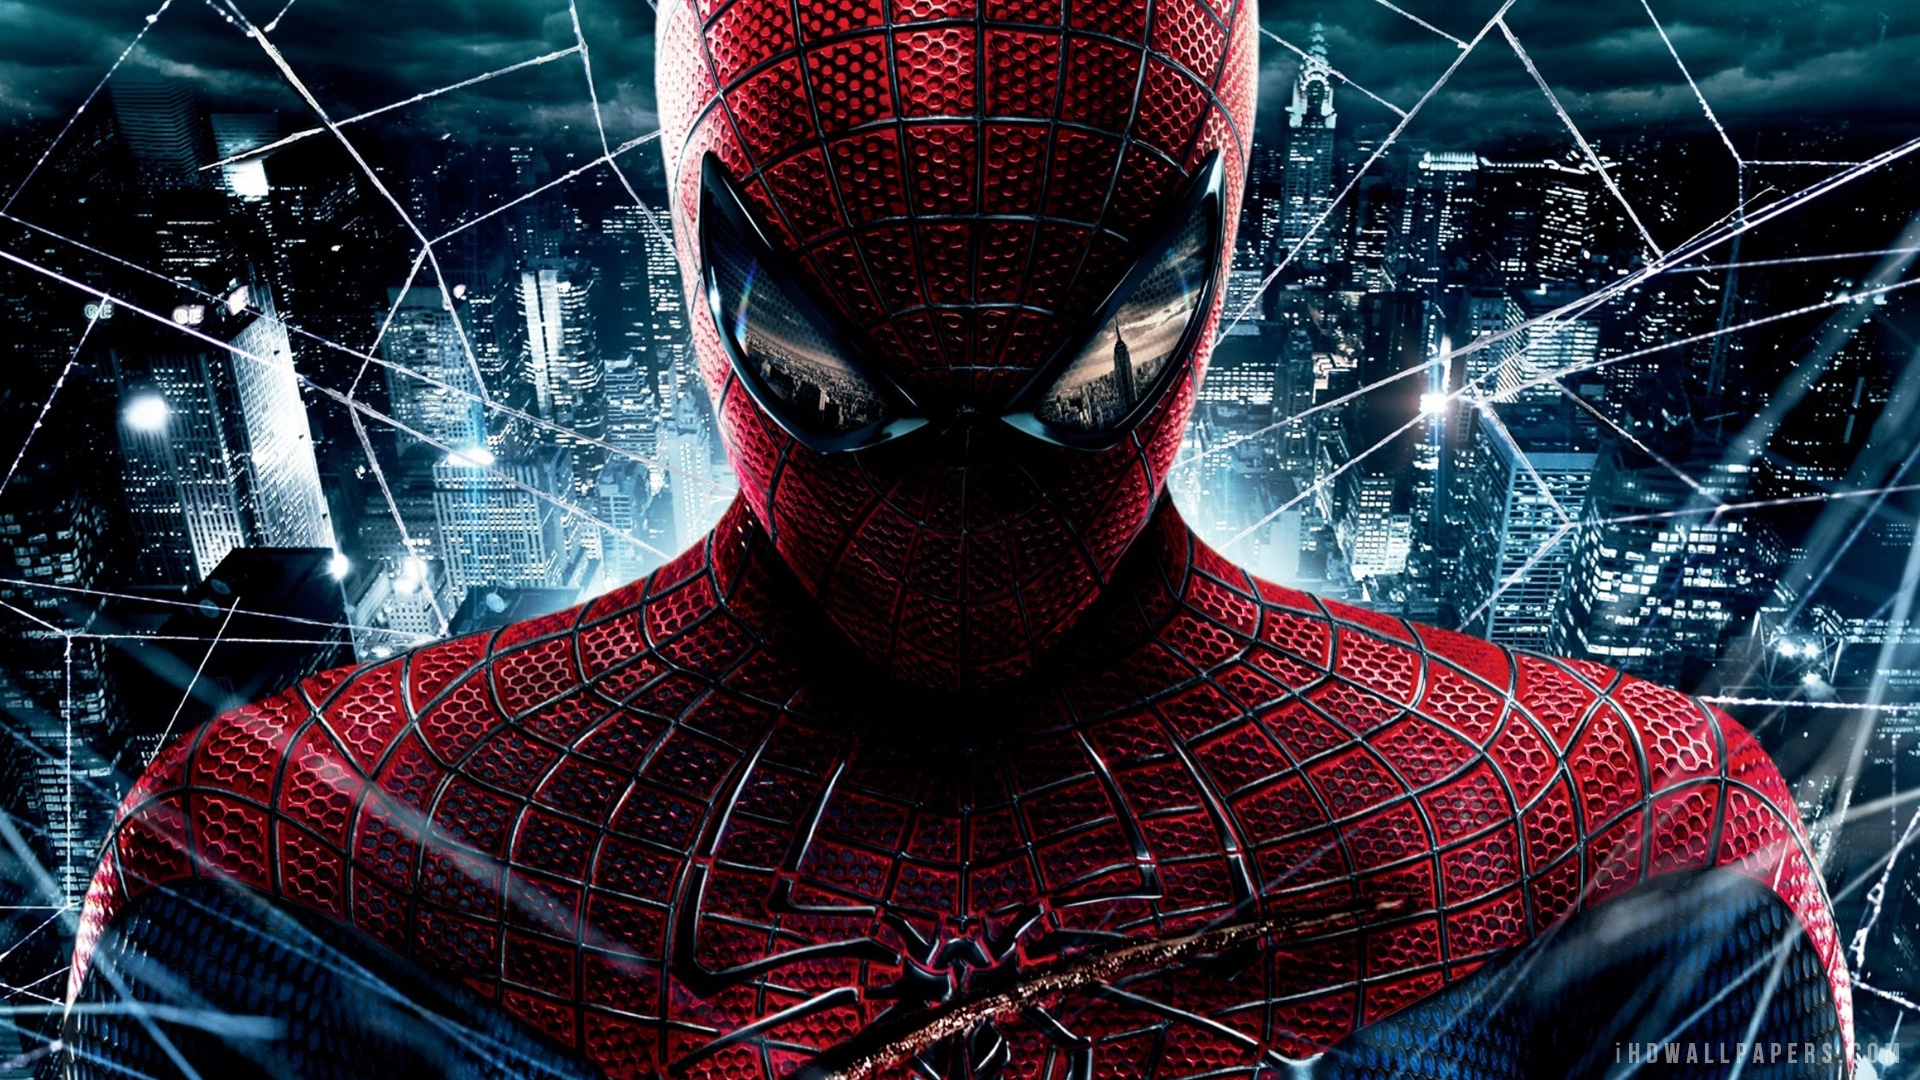  Download Amazing Spider Man WallpaperBackground in 1920x1080 1920x1080